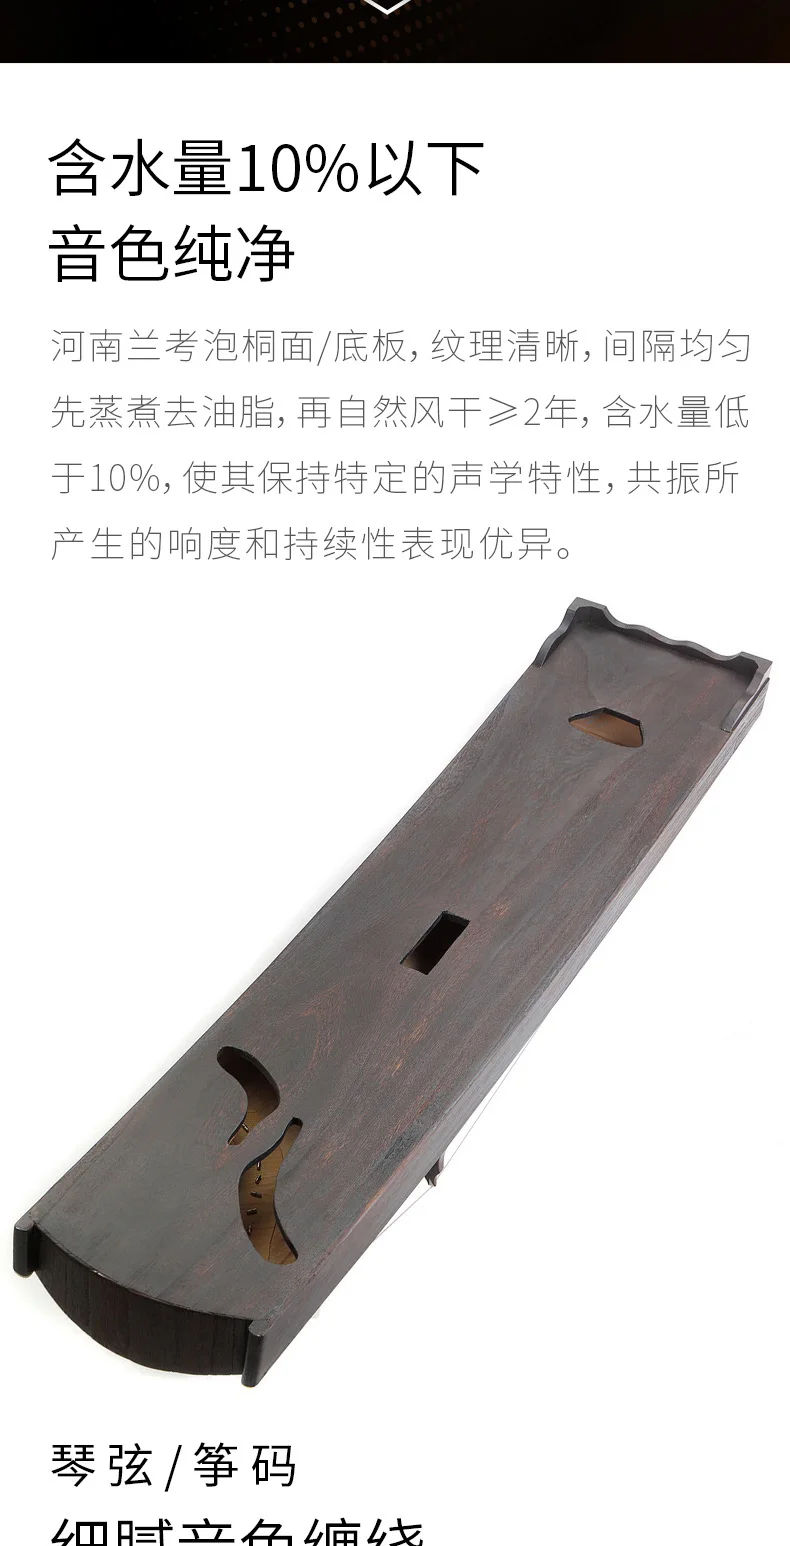 Профессиональный 21 струнный китайский zither первого класса паулуния guzheng профессиональные копки вставки solidwood Gu zheng zither